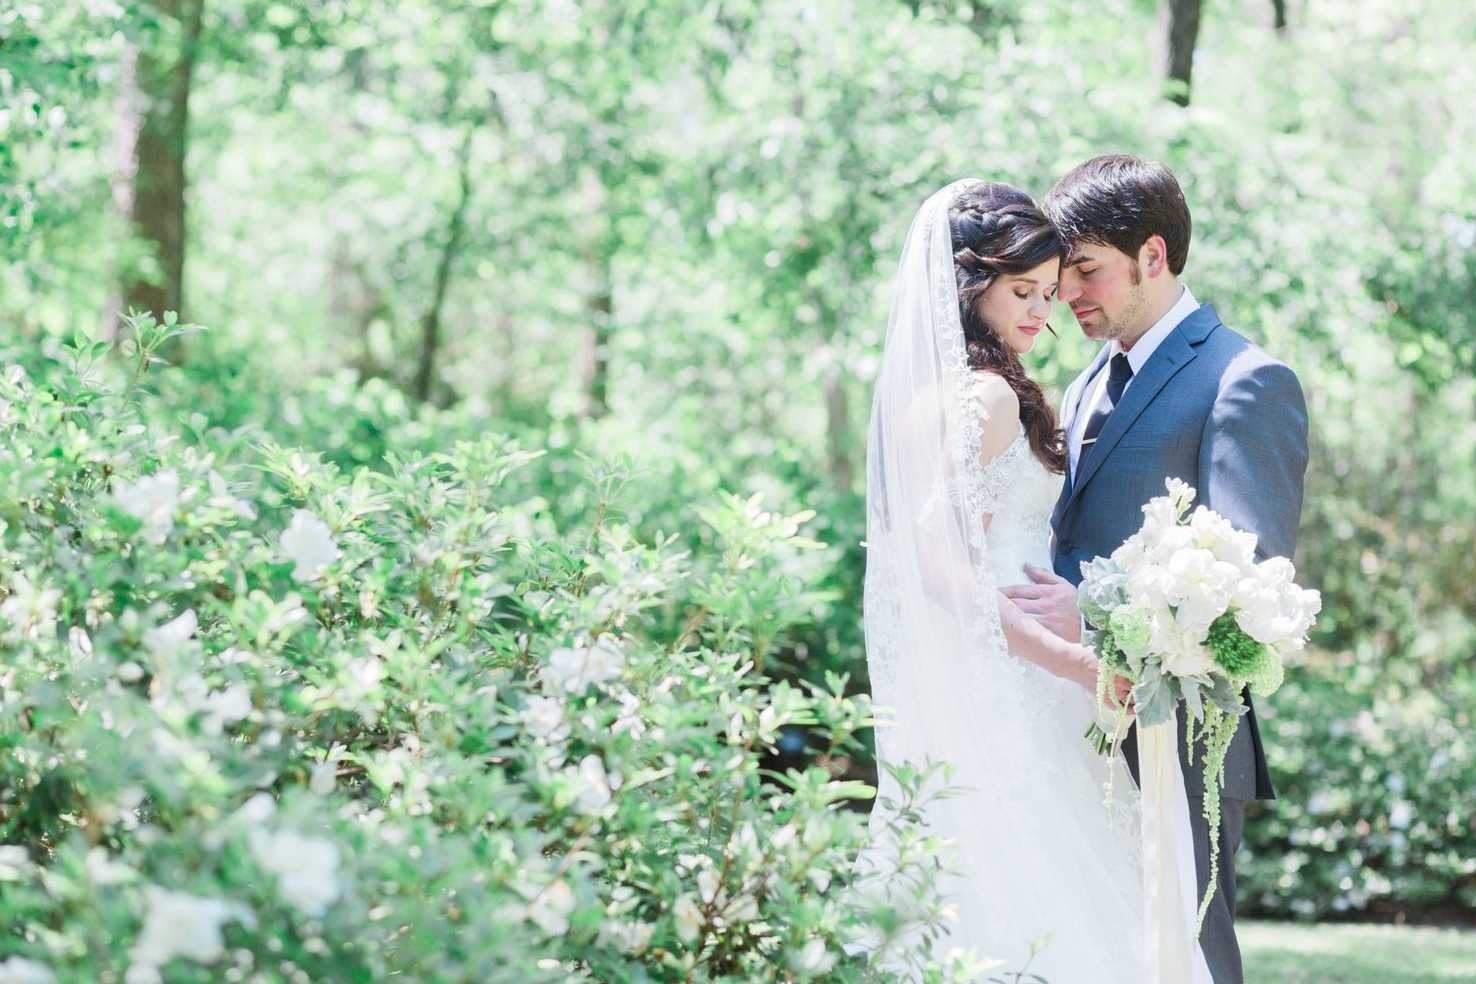 An Enchanted Forest Wedding | Ryan & Aubrey